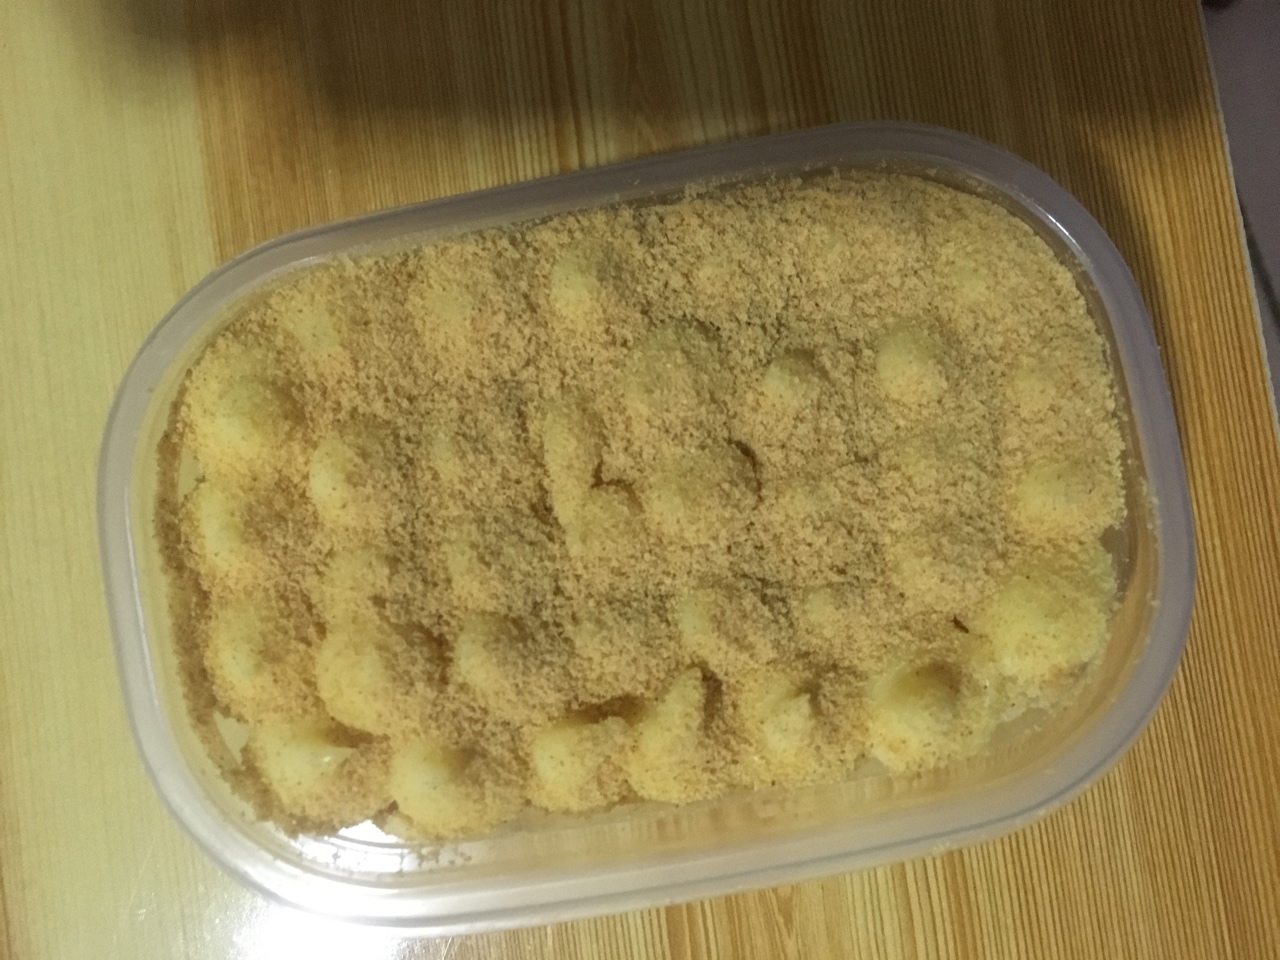 日式豆乳盒子蛋糕